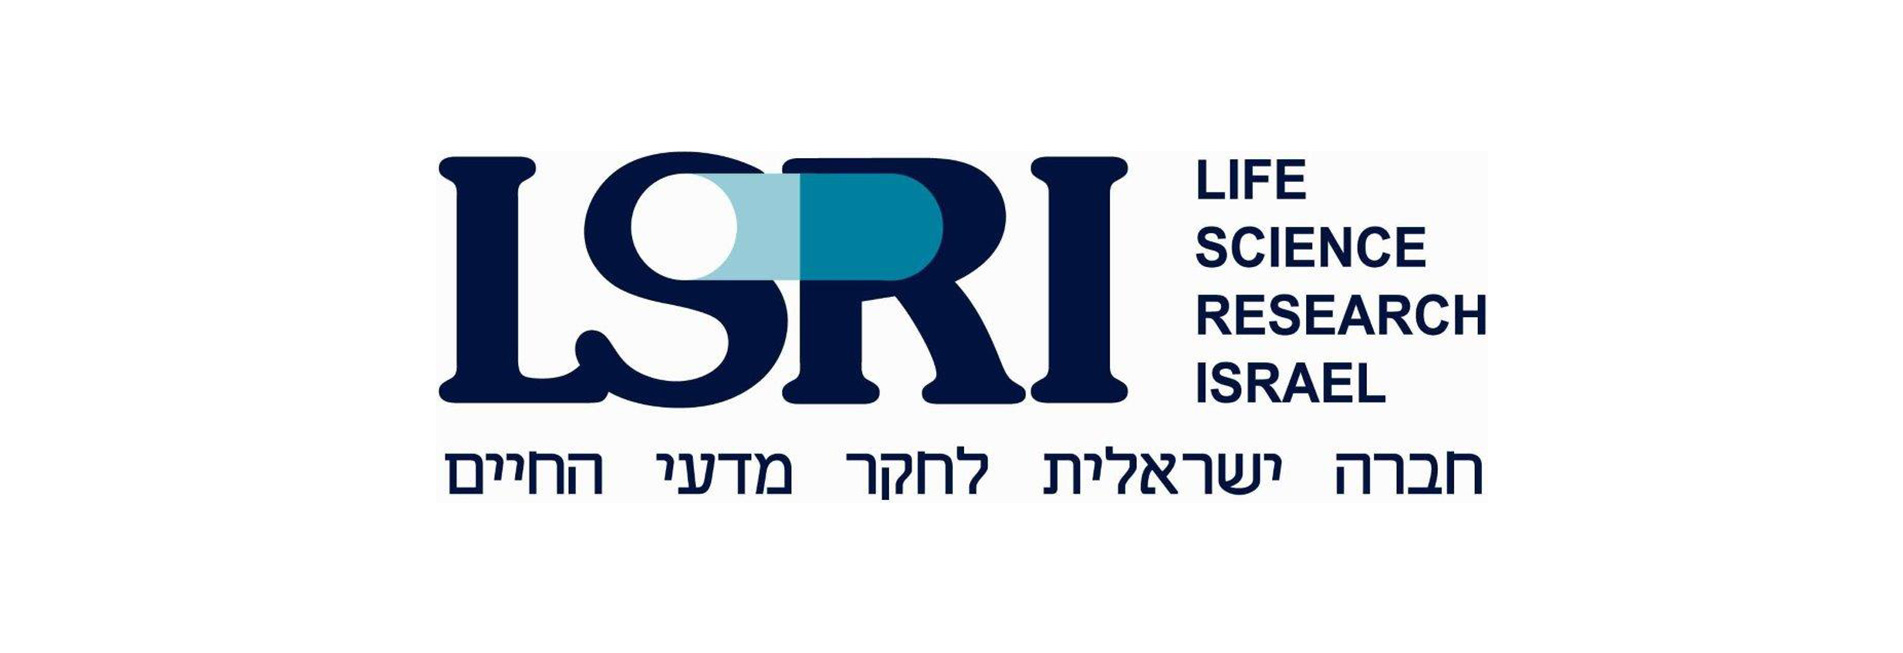 Life Science Research Israel Ltd. (LSRI)